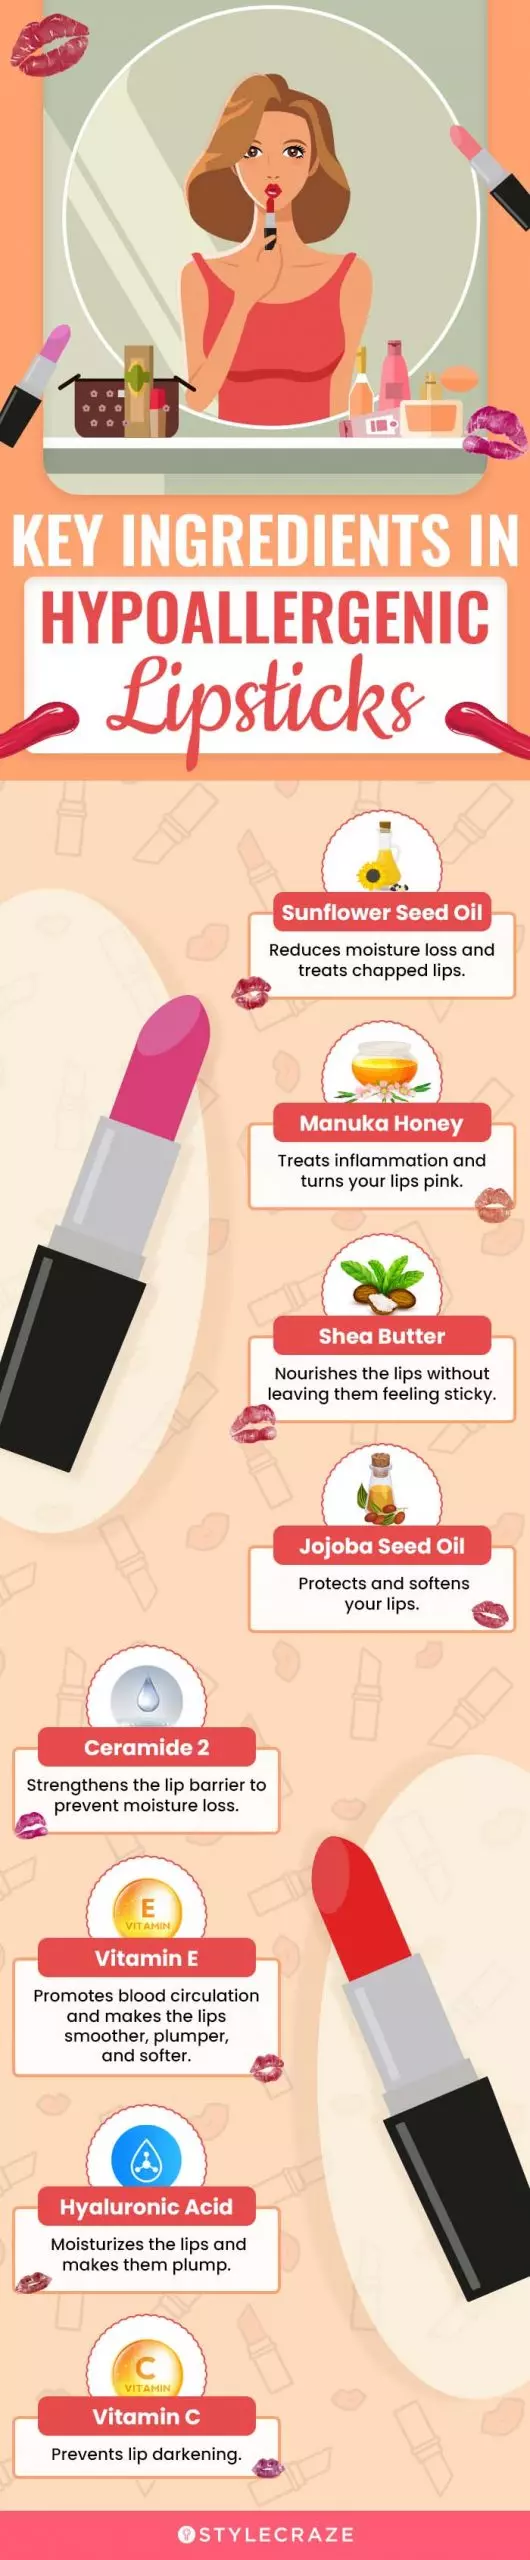 Key Ingredients In Hypoallergenic Lipsticks